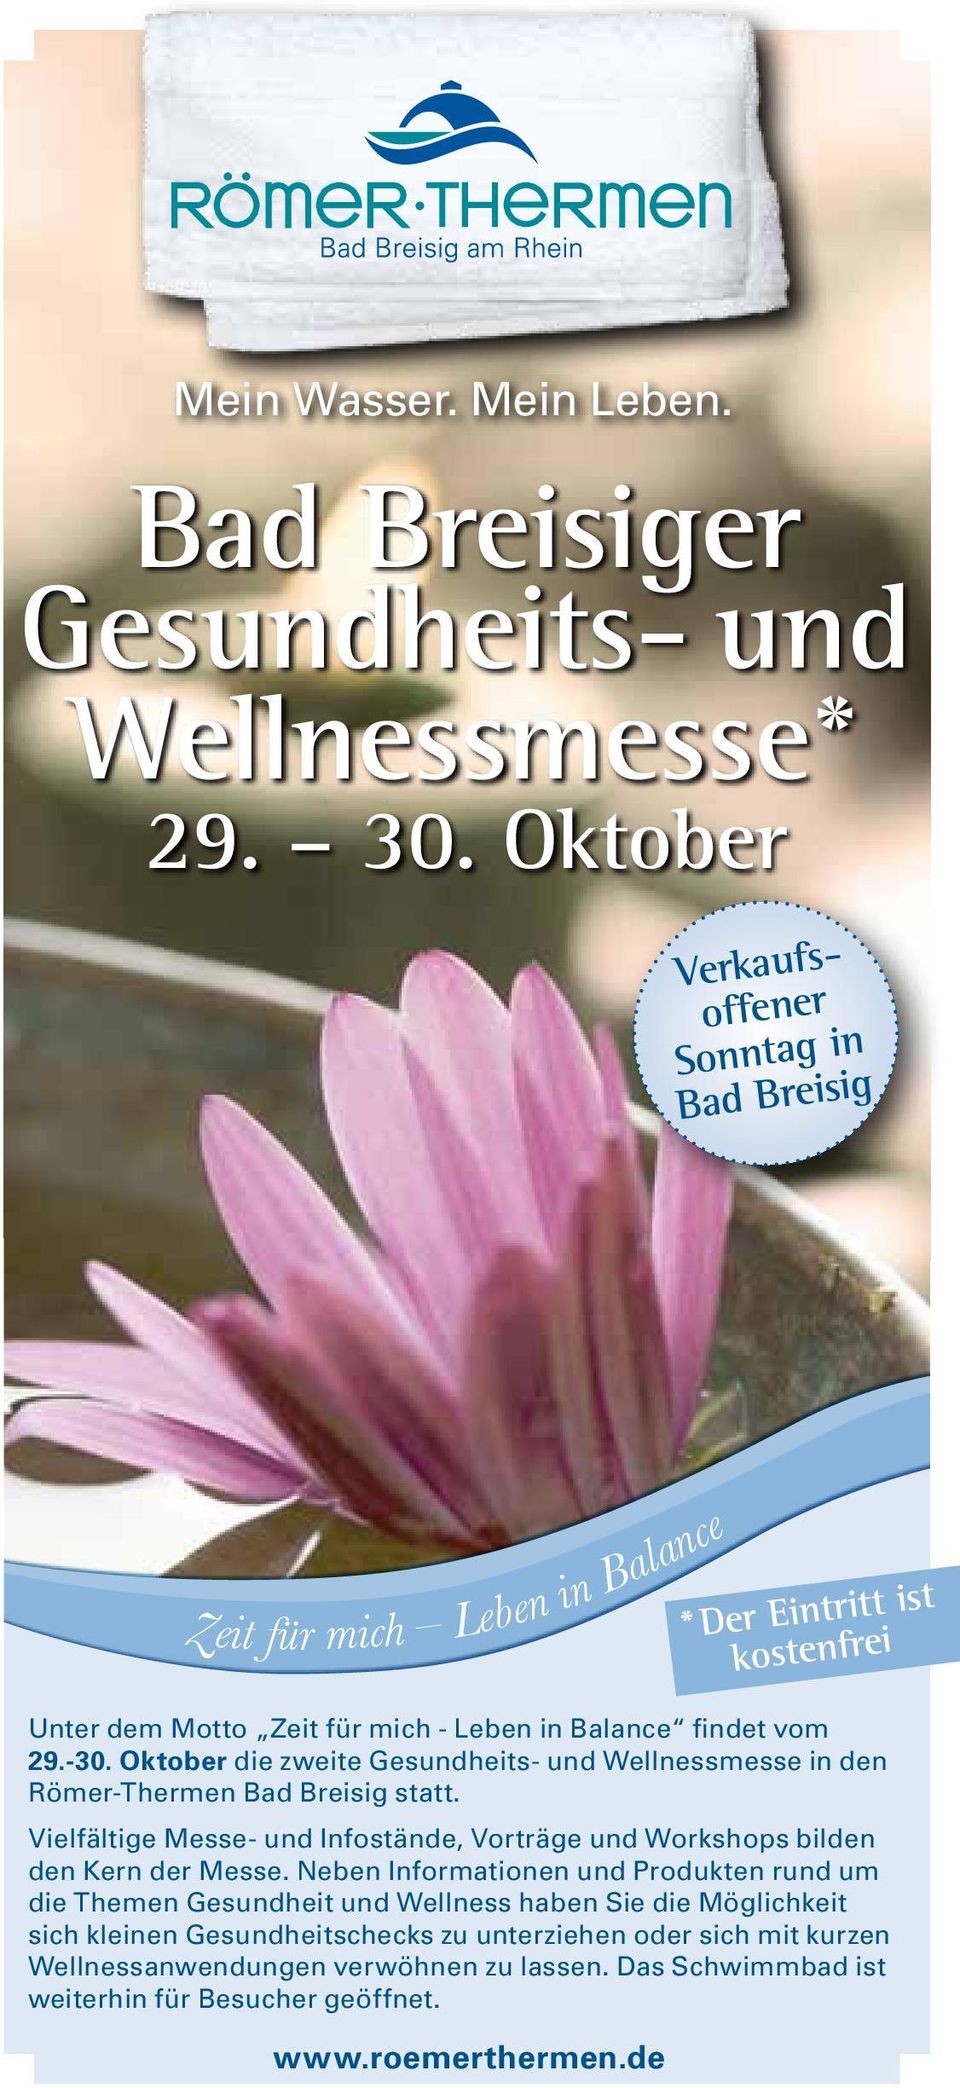 Oktober die zweite Gesundheits- und Wellnessmesse in den Römer-Thermen Bad Breisig statt. Vielfältige Messe- und Infostände, Vorträge und Workshops bilden den Kern der Messe.